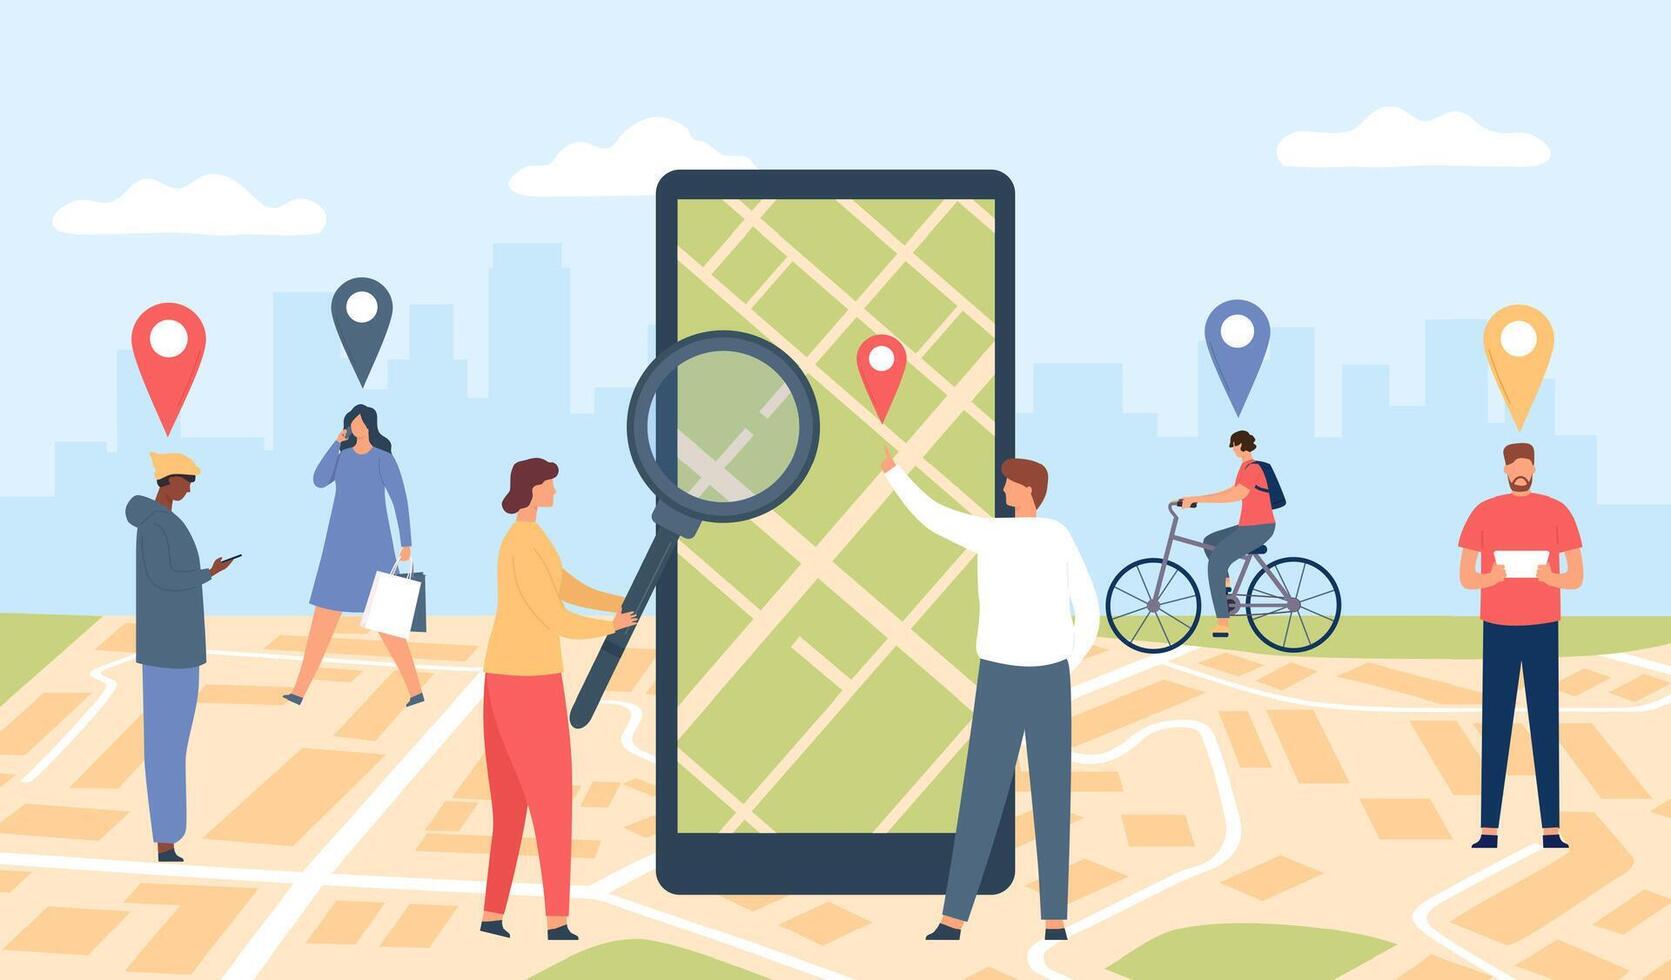 rastreo en línea solicitud. teléfono inteligente con GPS aplicación en pantalla, ciudad ubicación mapa y caminando personas con patas. geolocalización vector concepto